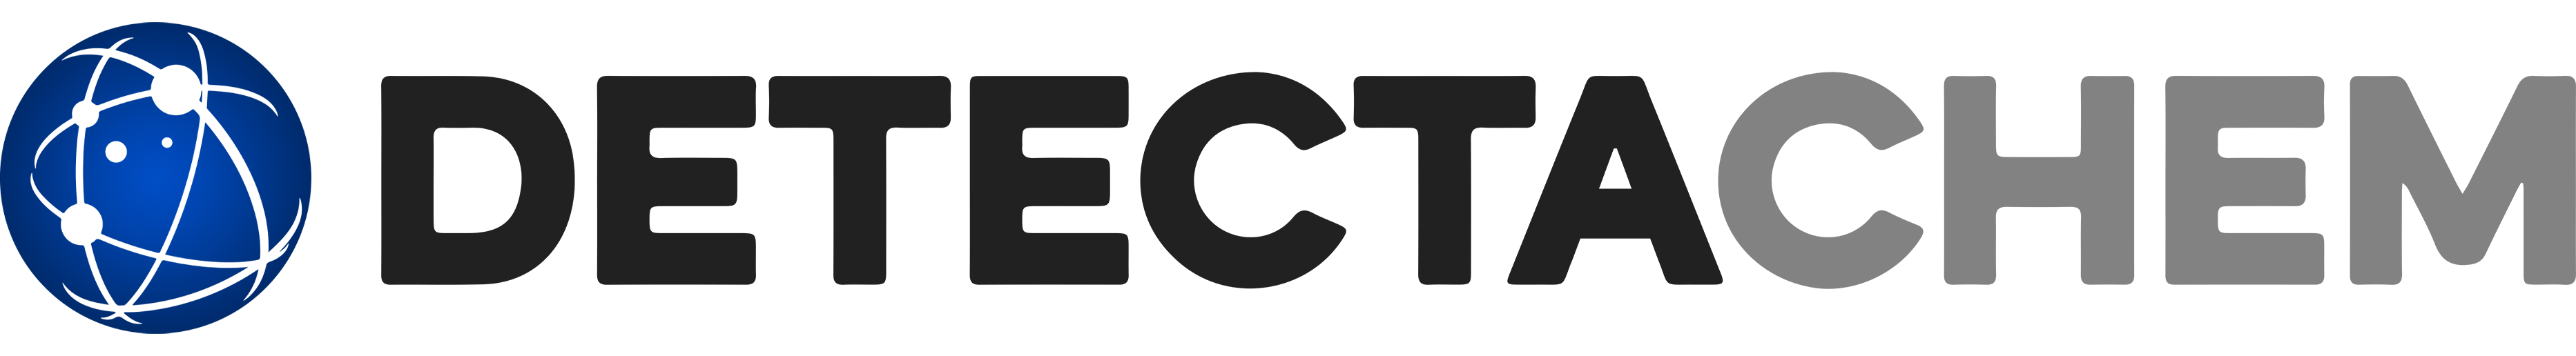 DetectaChem Primary Logo 2022 - 4K